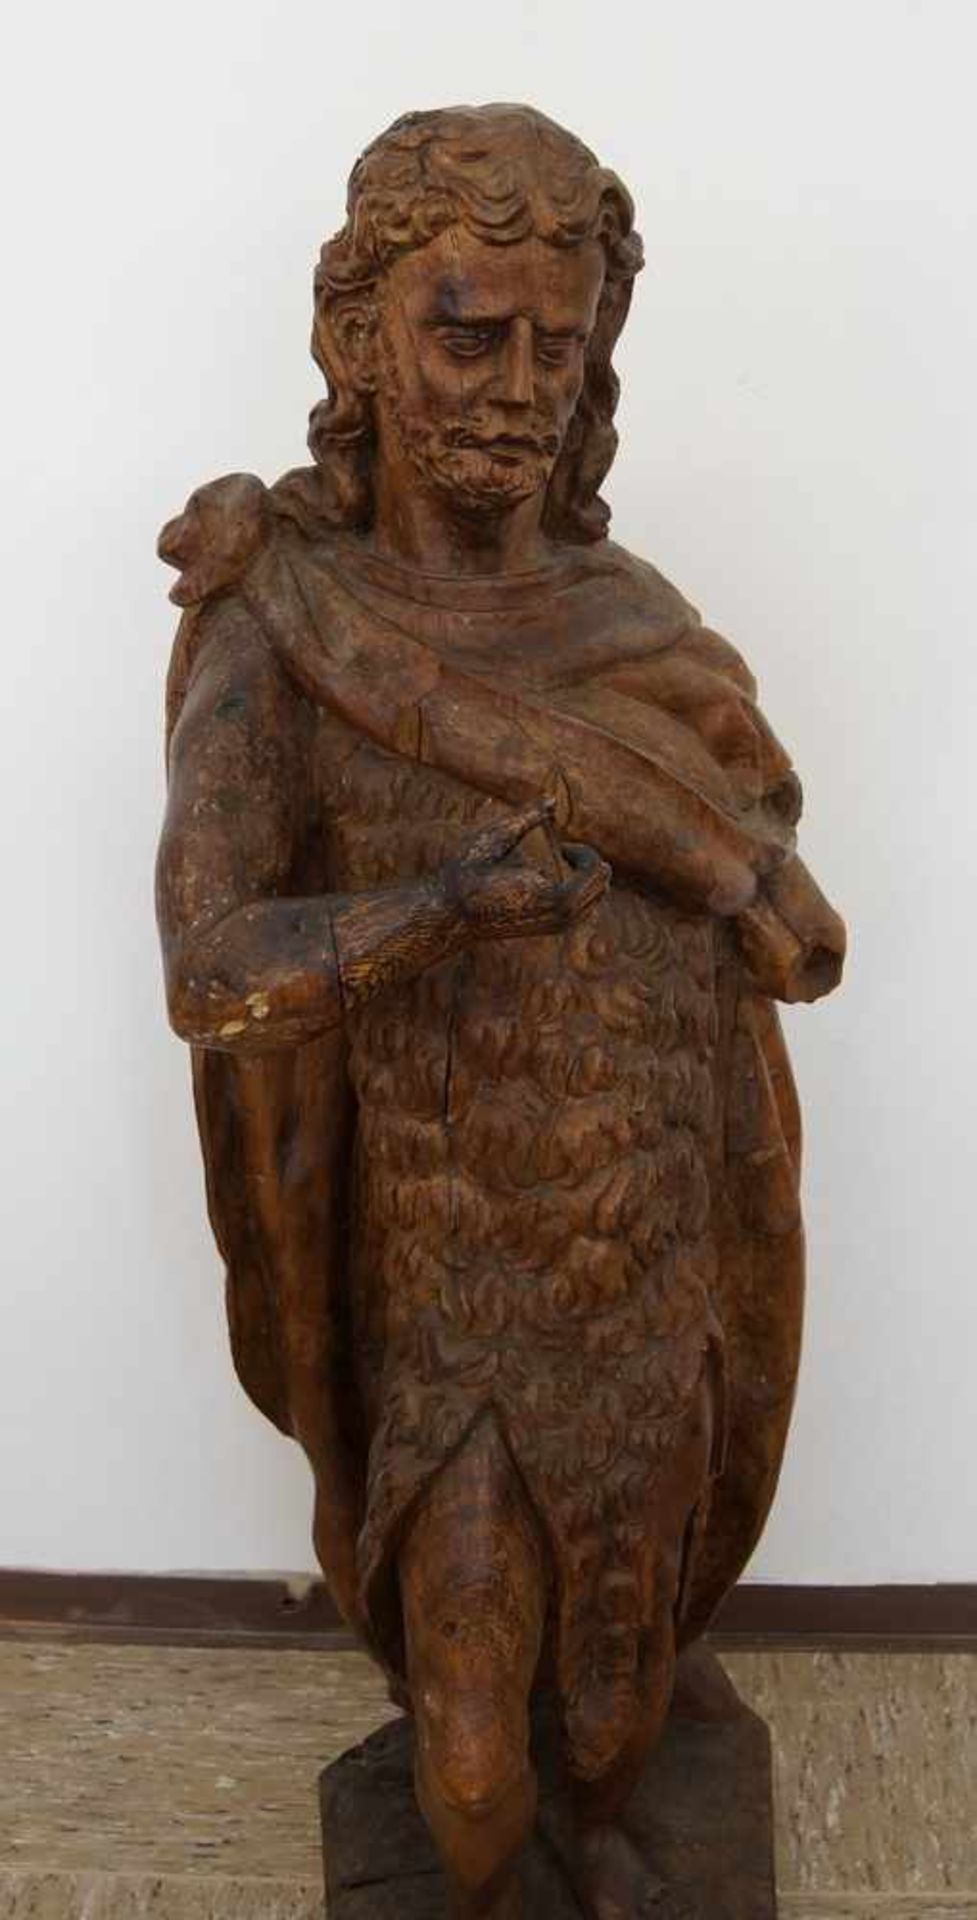 Grosse, in Holz geschnitzte Skulptur des heiligen Johannes, H 105cm- - -24.00 % buyer's premium on - Bild 2 aus 11